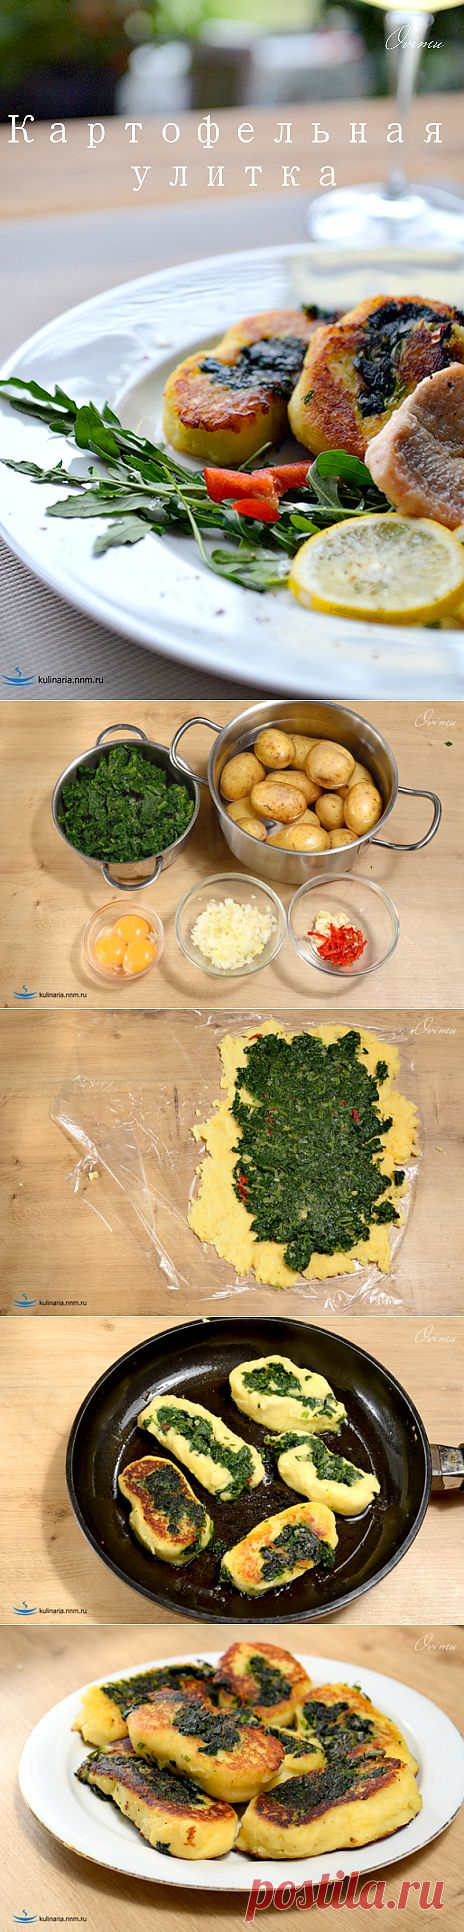 Картофельная улитка | Ваши любимые рецепты